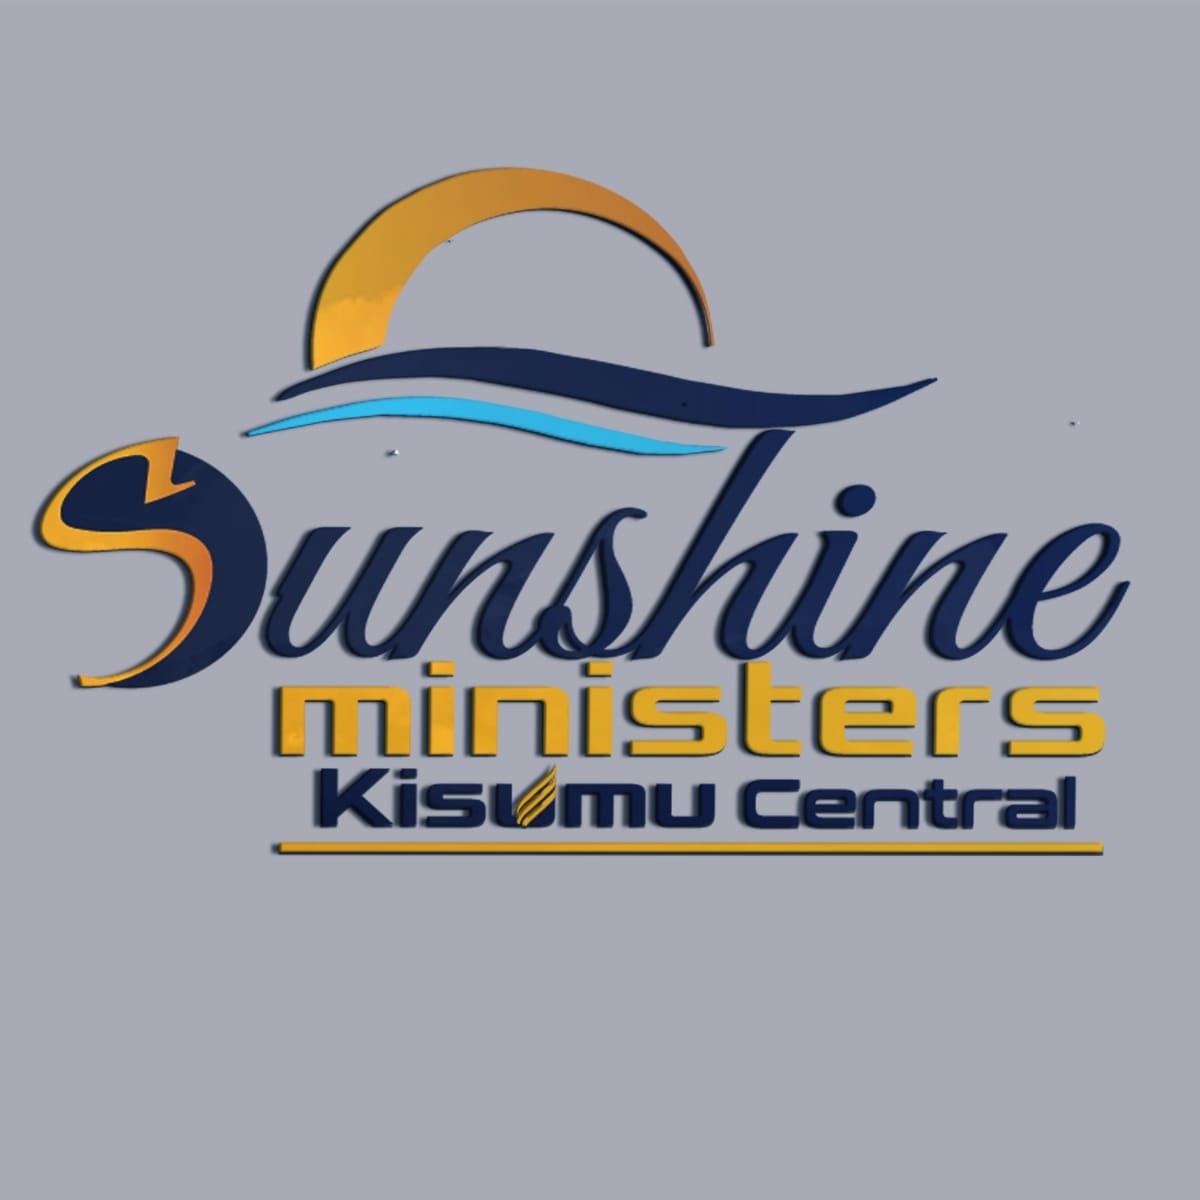 Sunshine Ministers Kisumu Central – Mbarikiwa Media